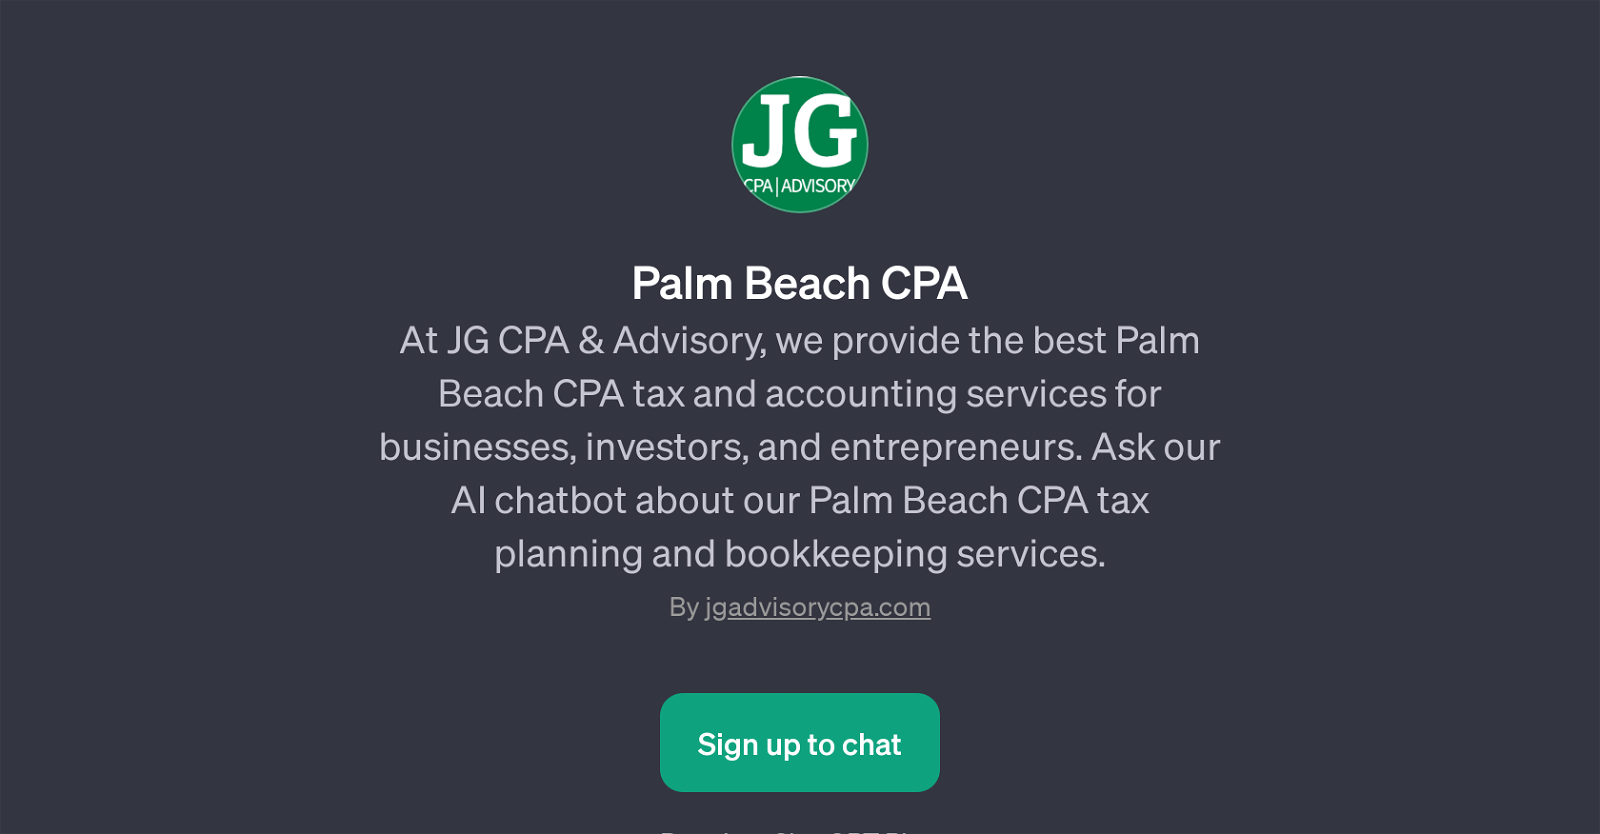 Palm Beach CPA website